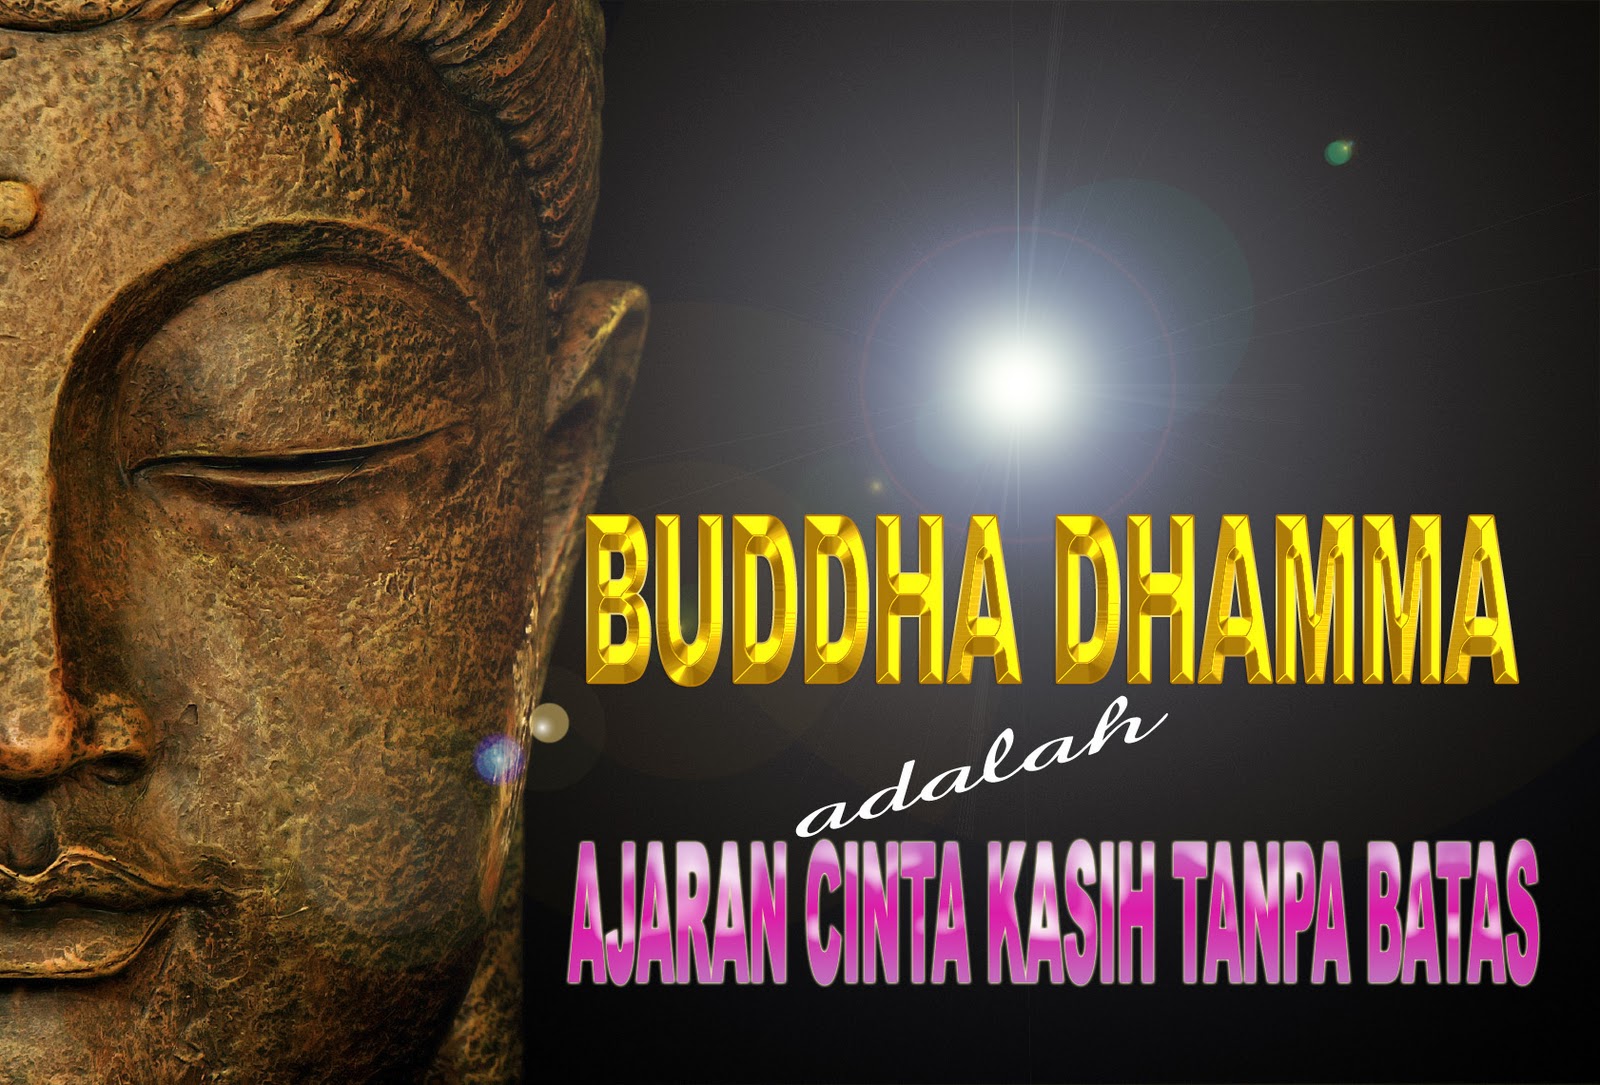 PUSTAKA DHAMMA Buddha Dhamma Adalah Ajaran Cinta Kasih Tanpa Batas